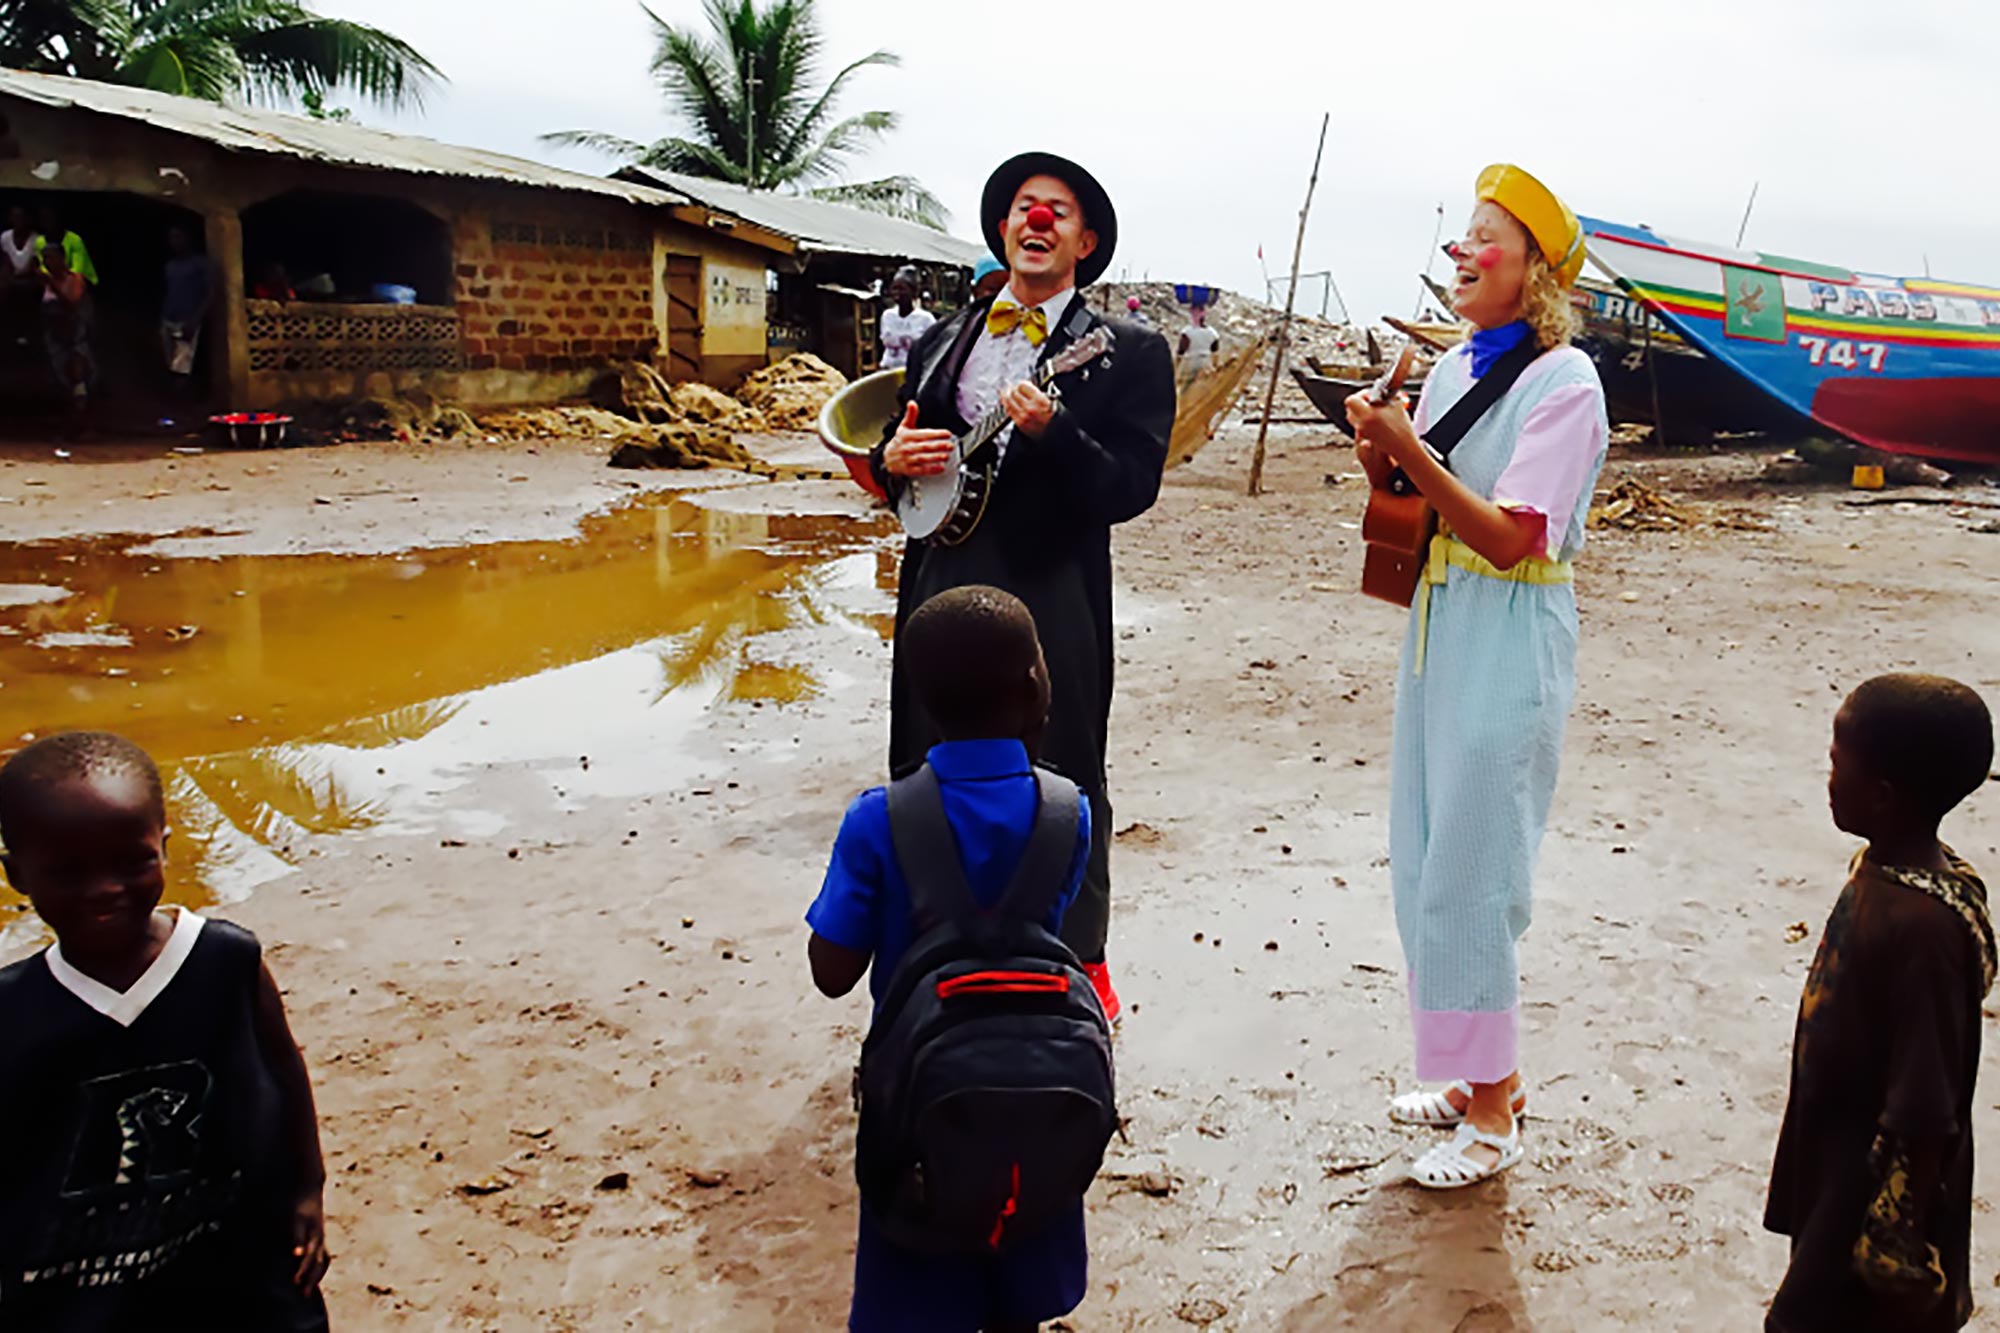 Tim Cunningham performs with Malin Öhrn sing to children in an African village